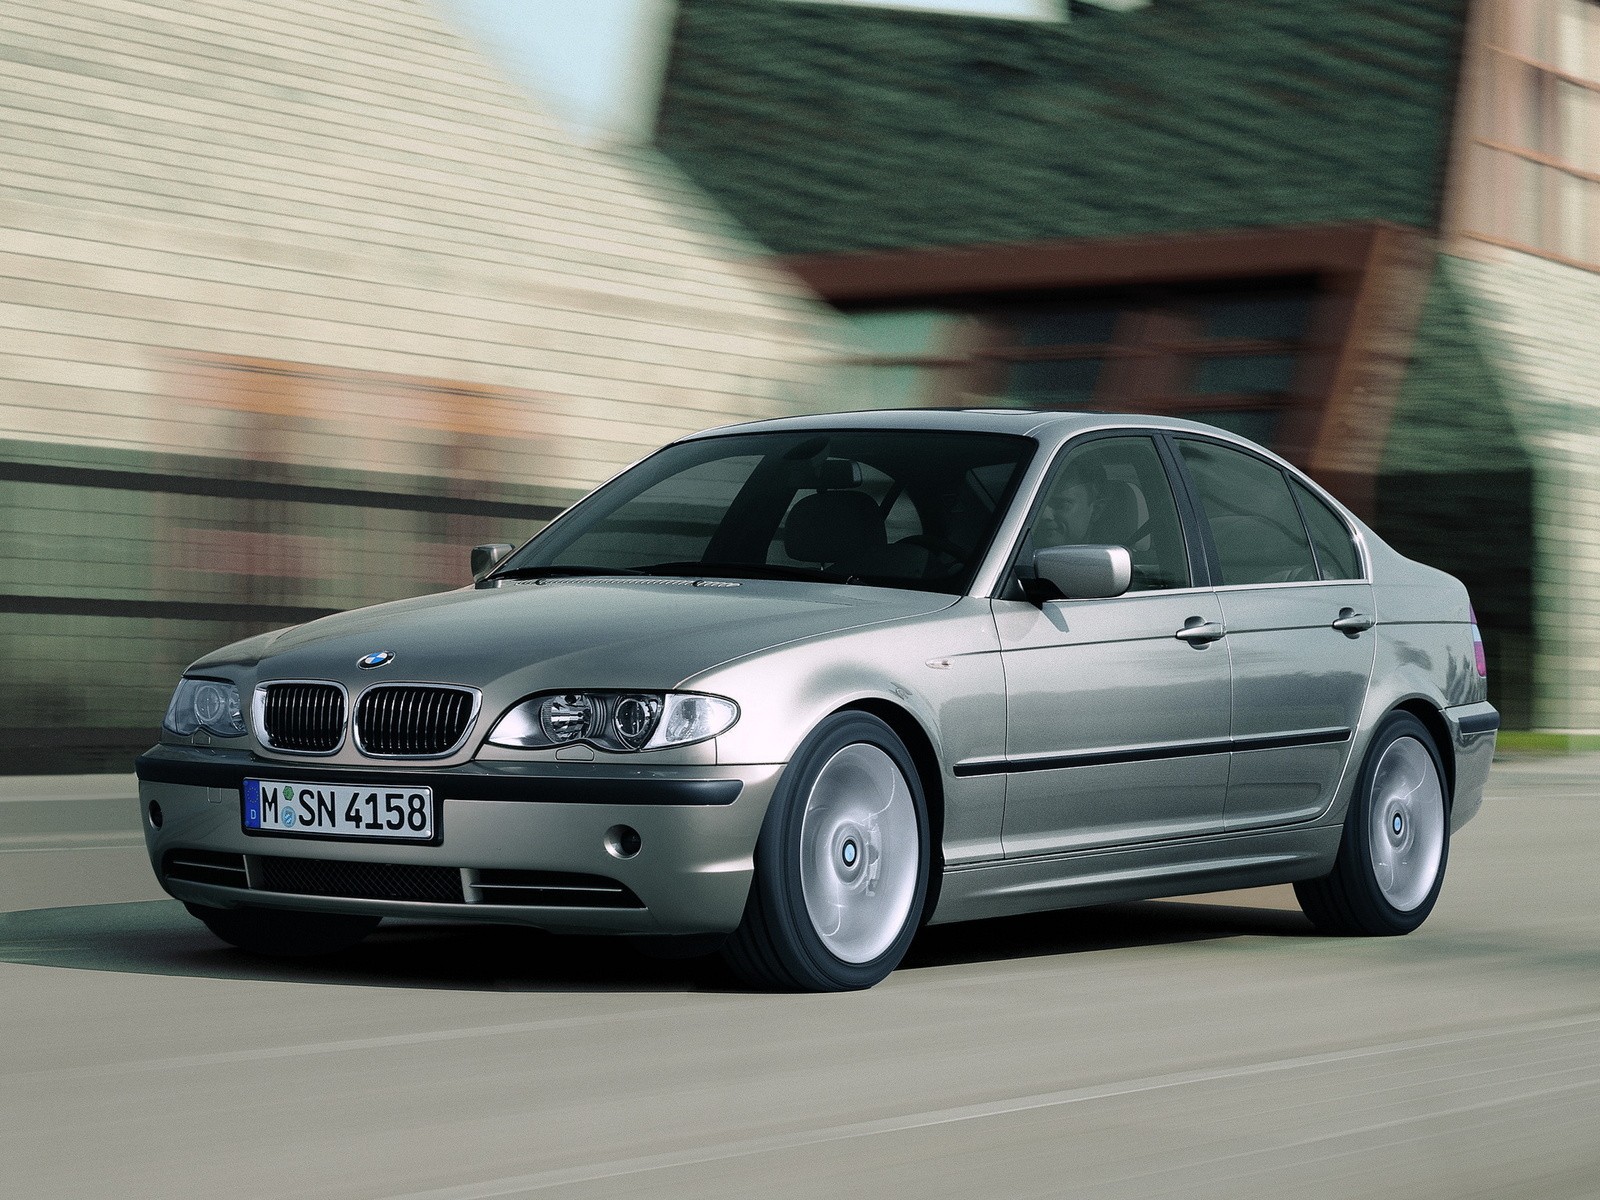 BMW 318i đời 2005 giá bao nhiêu thì mua được  VnExpress